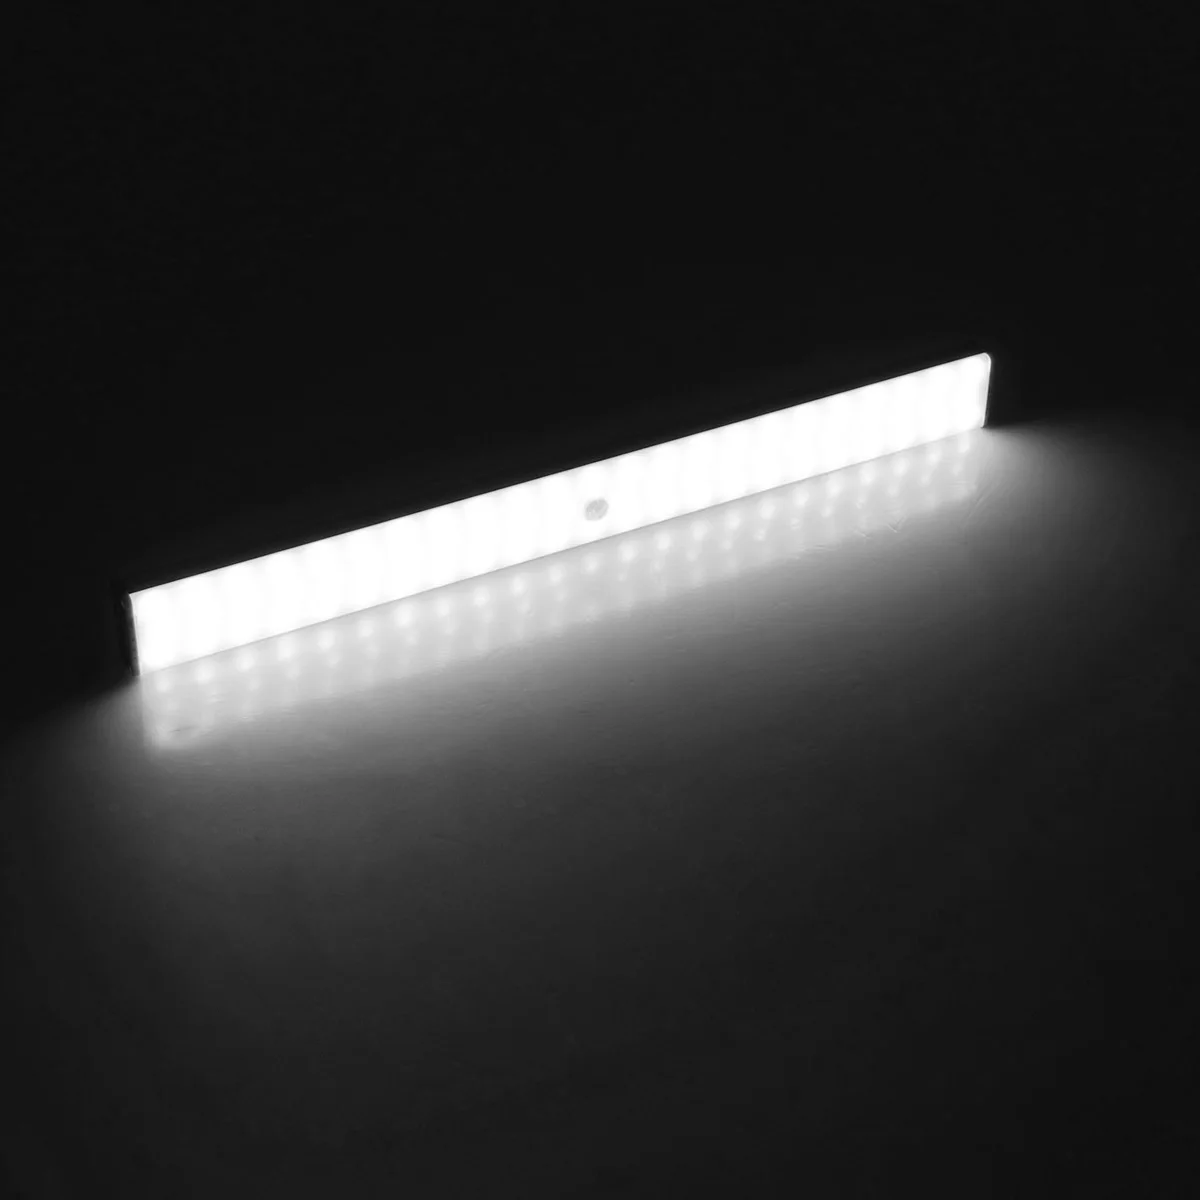 40 см датчик движения Ночной светильник usb зарядка 68 светодиодный Диммируемый водонепроницаемый настенный светильник для шкафа лестницы лампы Беспроводная Светодиодная панель светильник s - Испускаемый цвет: Белый